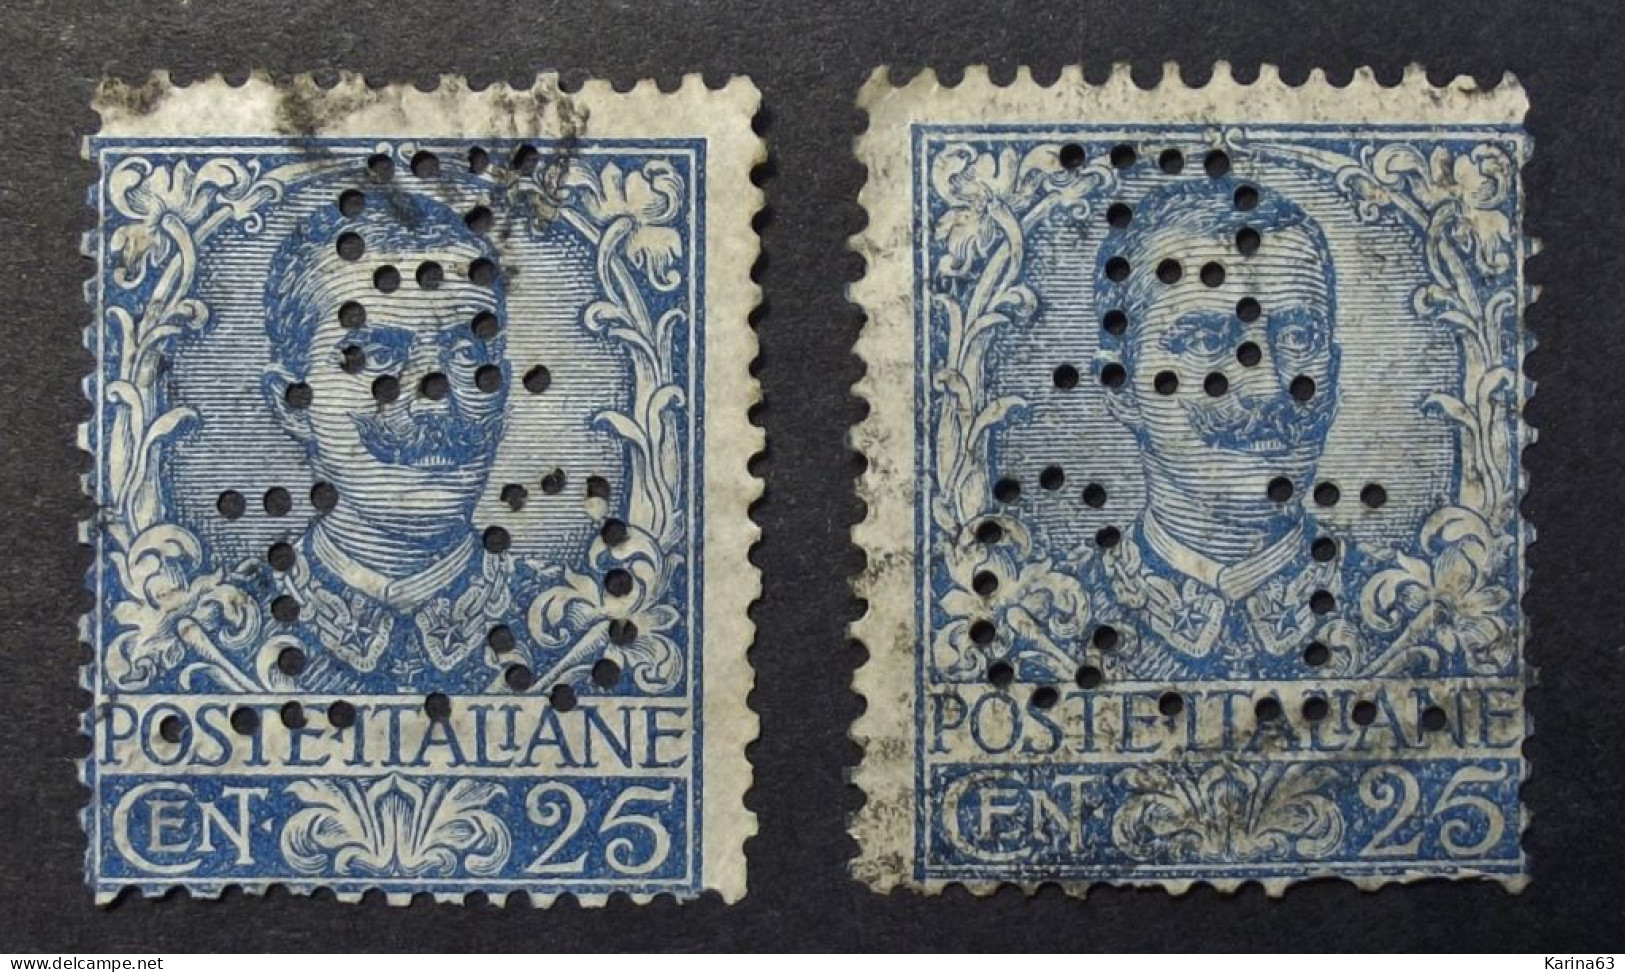 Italia - Italy - 1901  -  Perfin - Lochung -  B C I - Banco Commercial Italiana  -  Cancelled - Used